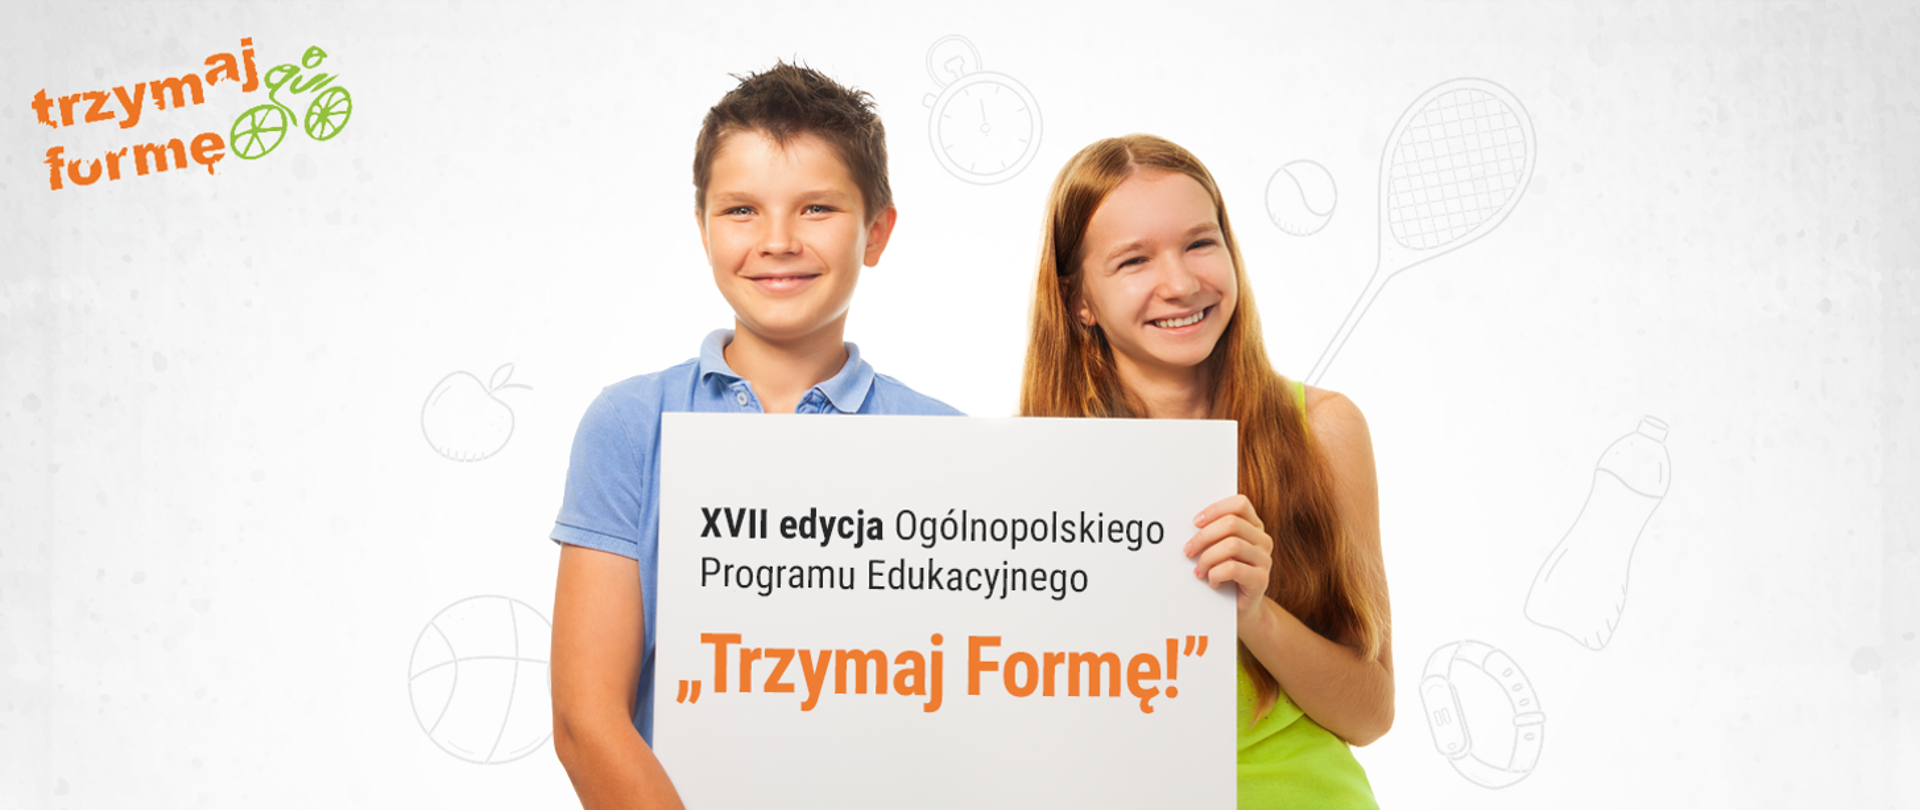 Zdjęcie na jasnym tle- dwoje uśmiechniętych dzieci w wieku 12 lat trzyma kartkę z napisem XVII edycja Ogólnopolskiego Programu Edukacyjnego Trzymaj Formę!